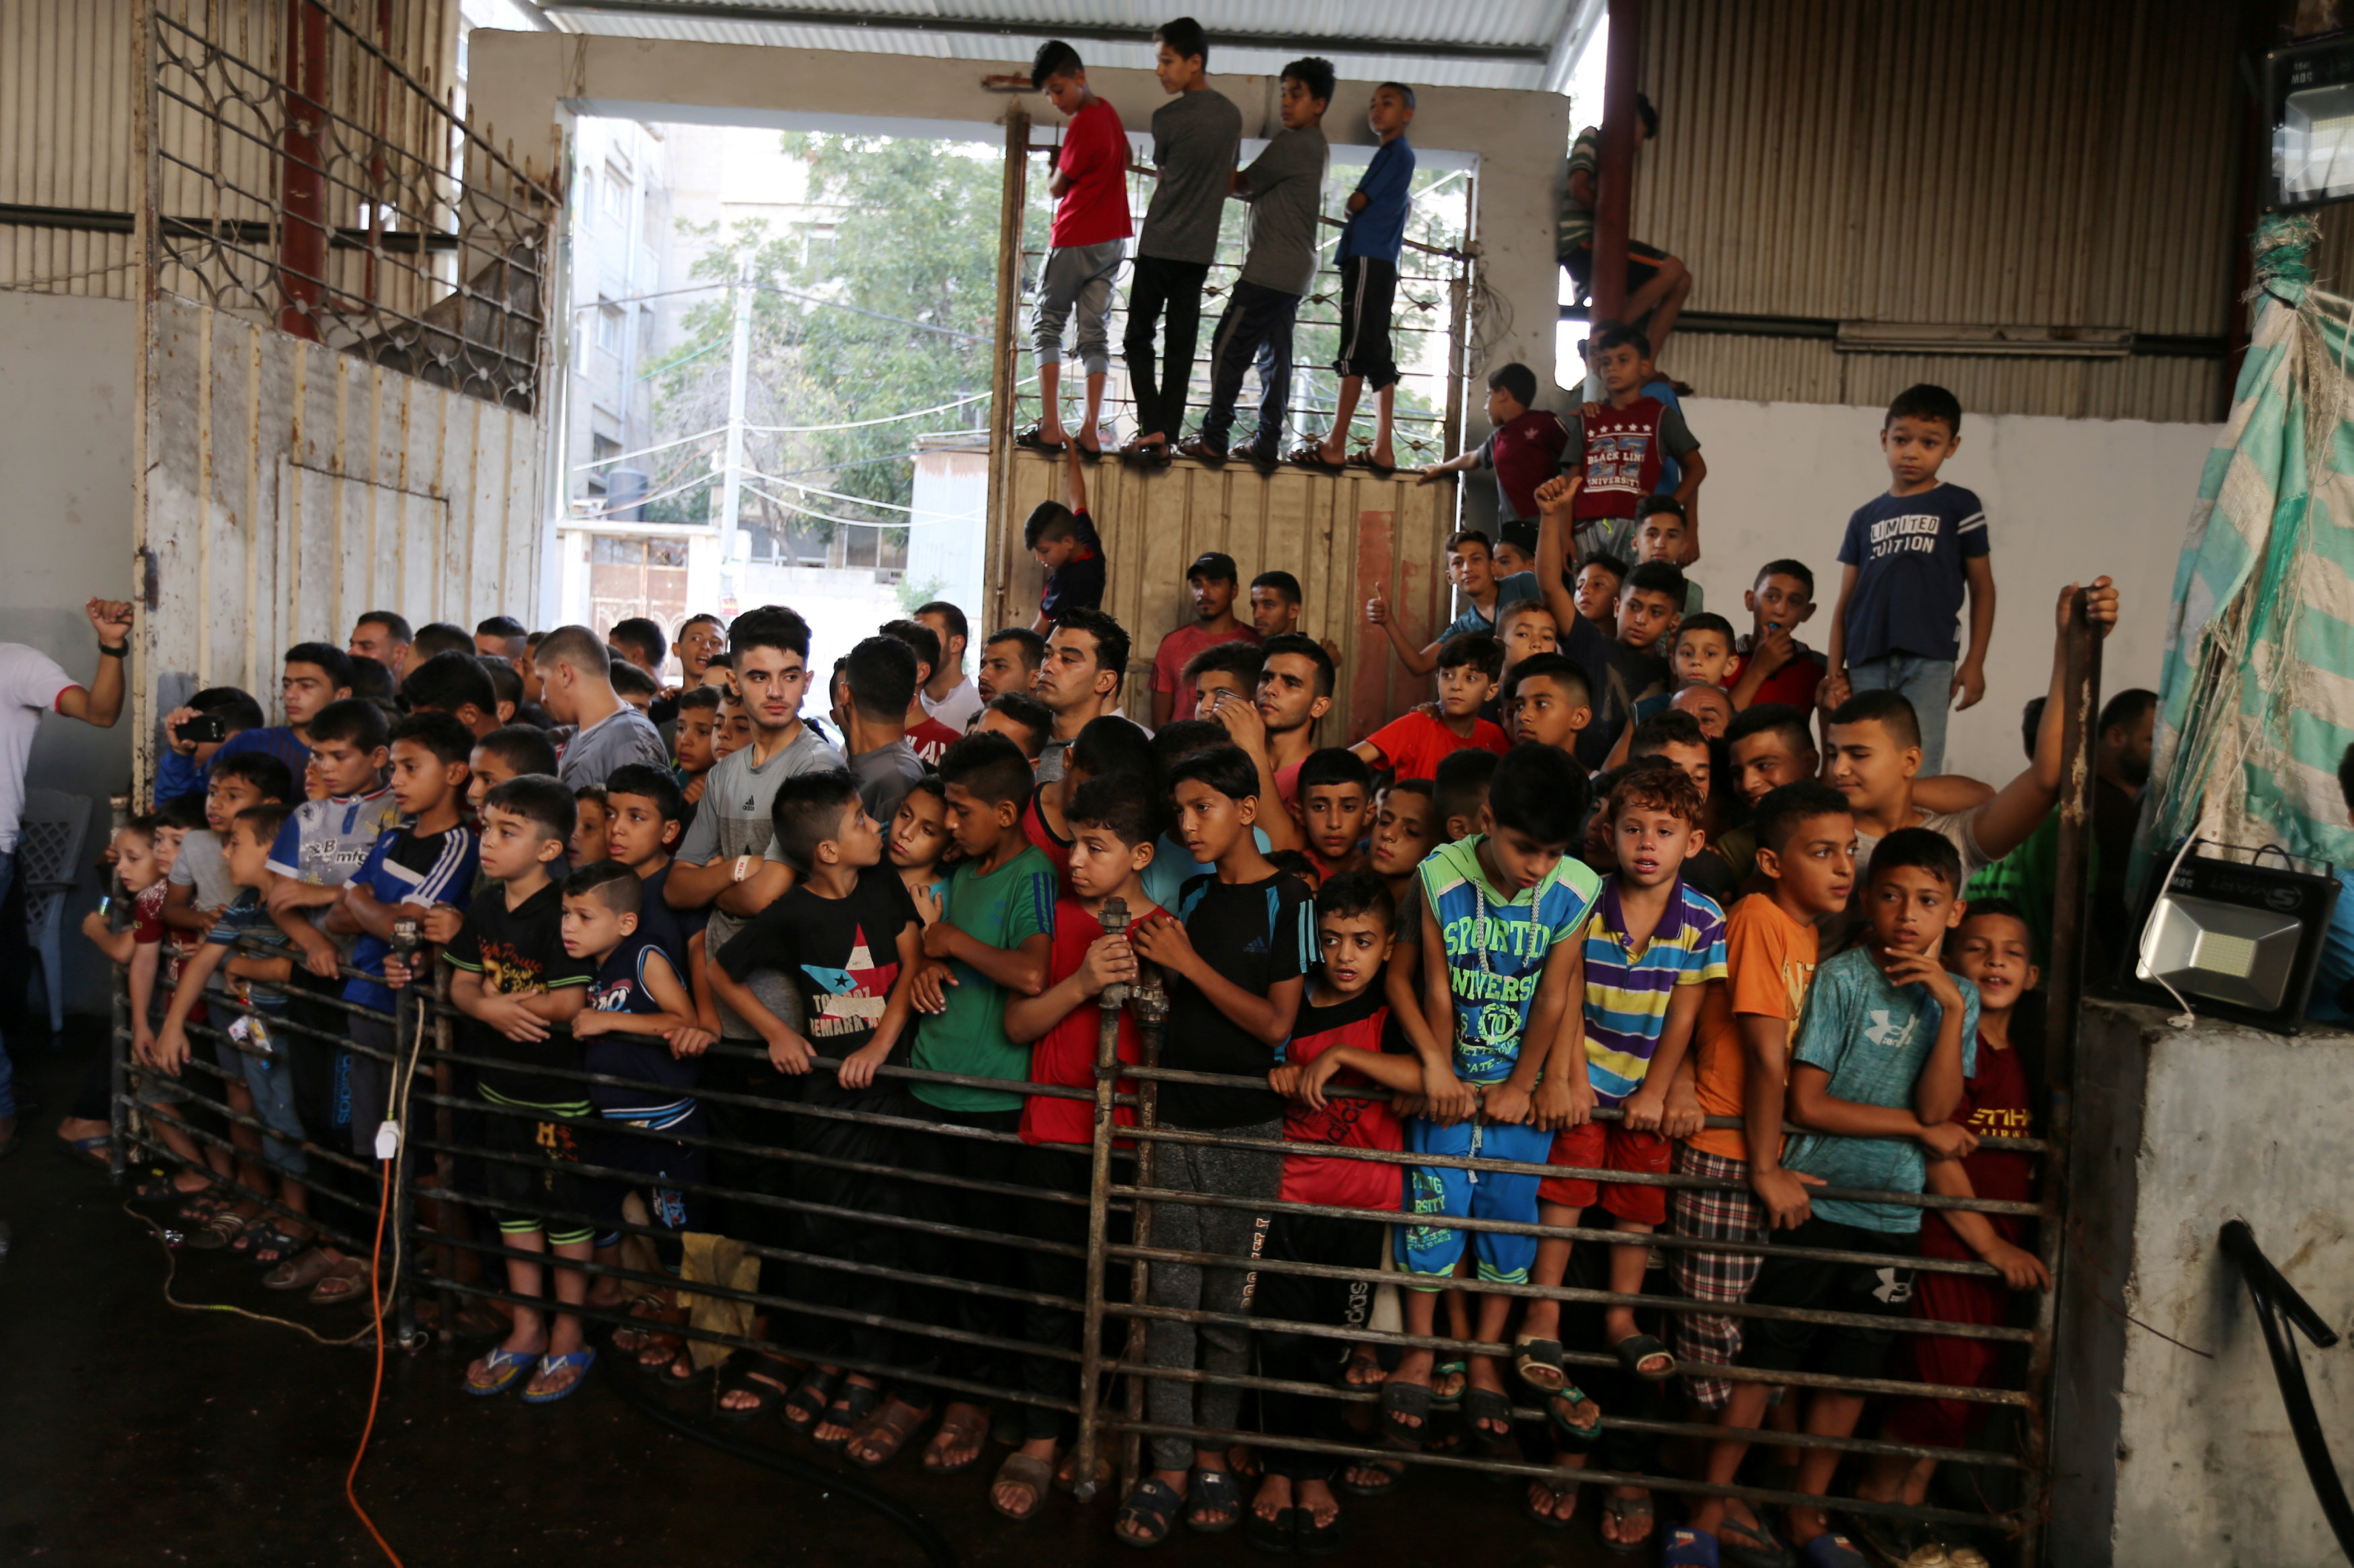 الأطفال يجتمعون لمشاهدة ذبح الأضاحى فى العيد فى فلسطين